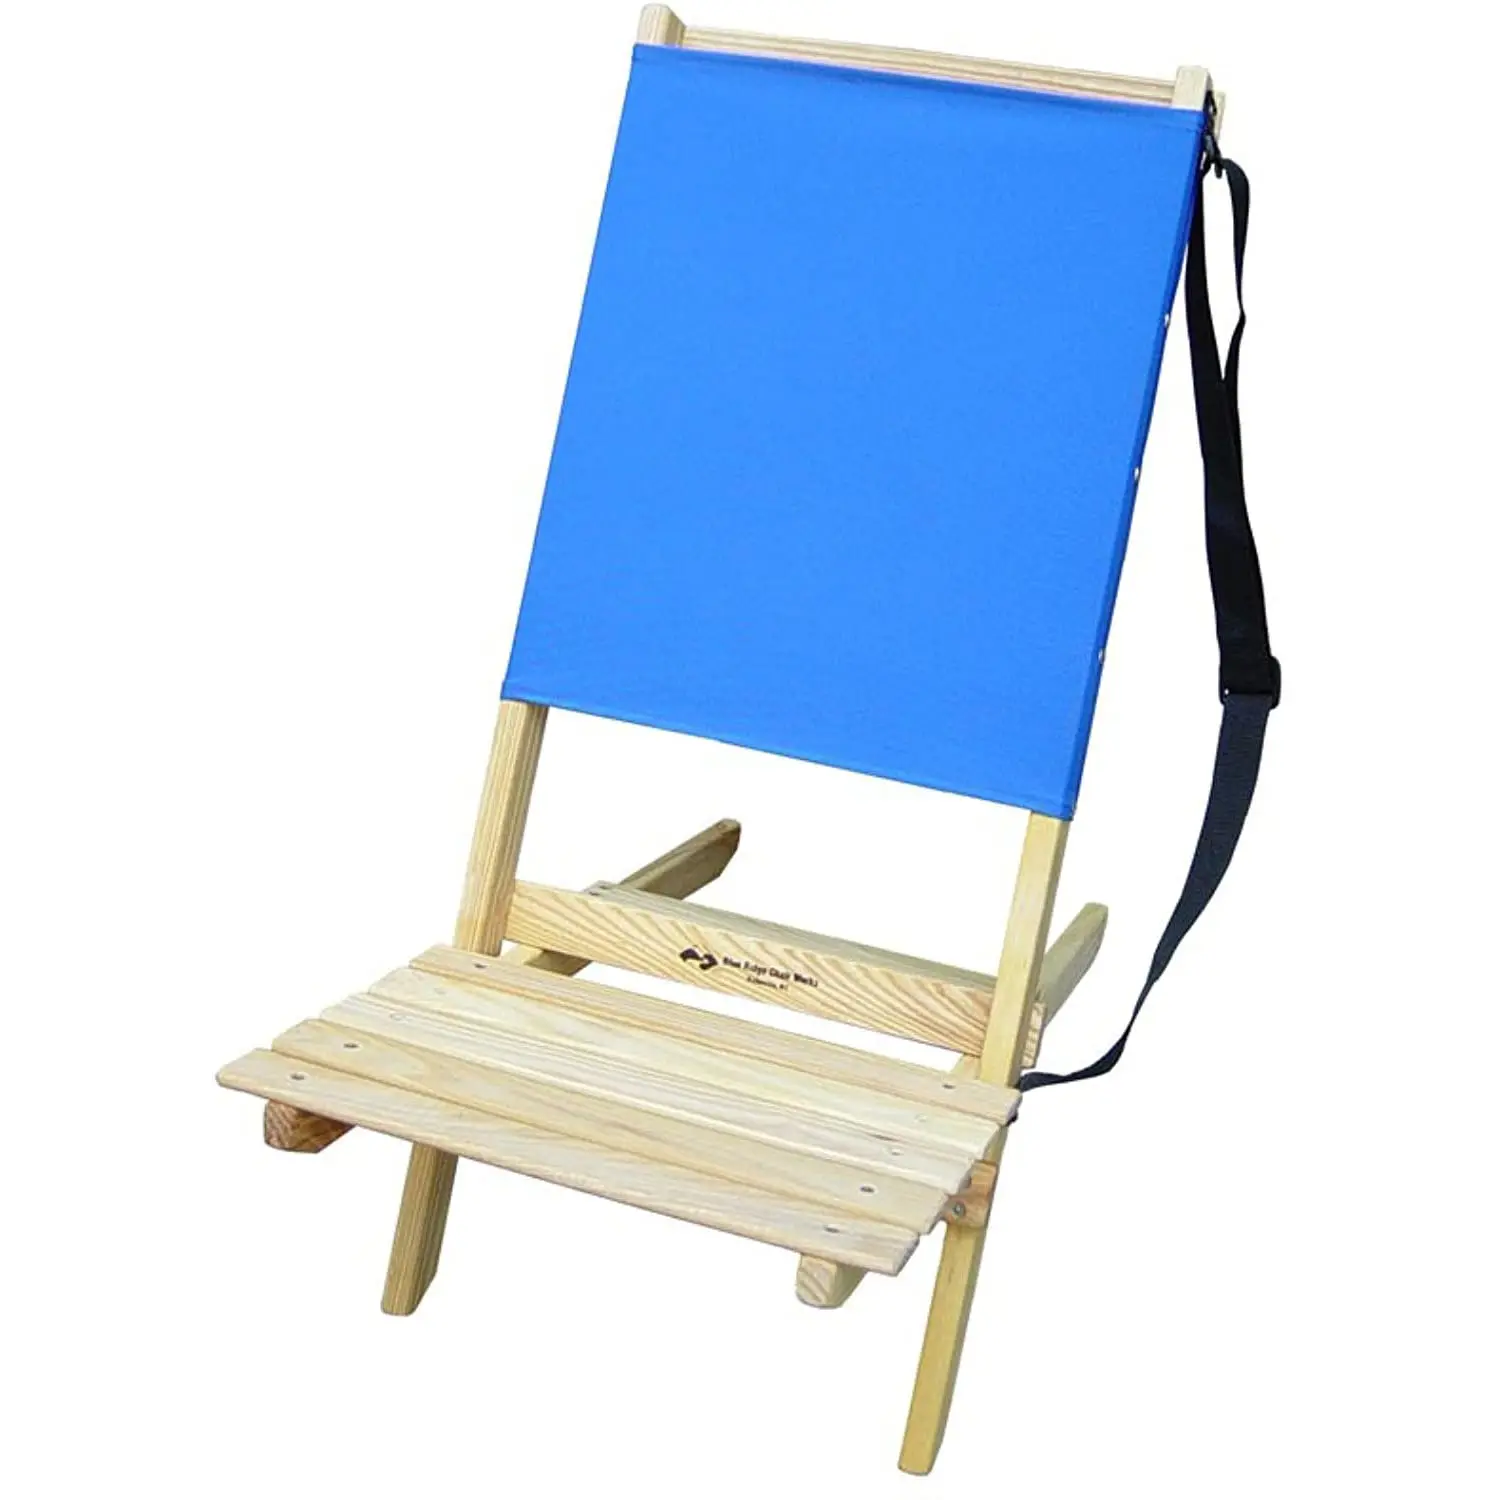 Modern taşınabilir dış mekan mobilyası kolay taşınan kumaş çam kayın ahşap plaj sandalyesi omuz askısı ile-plaj parkı için